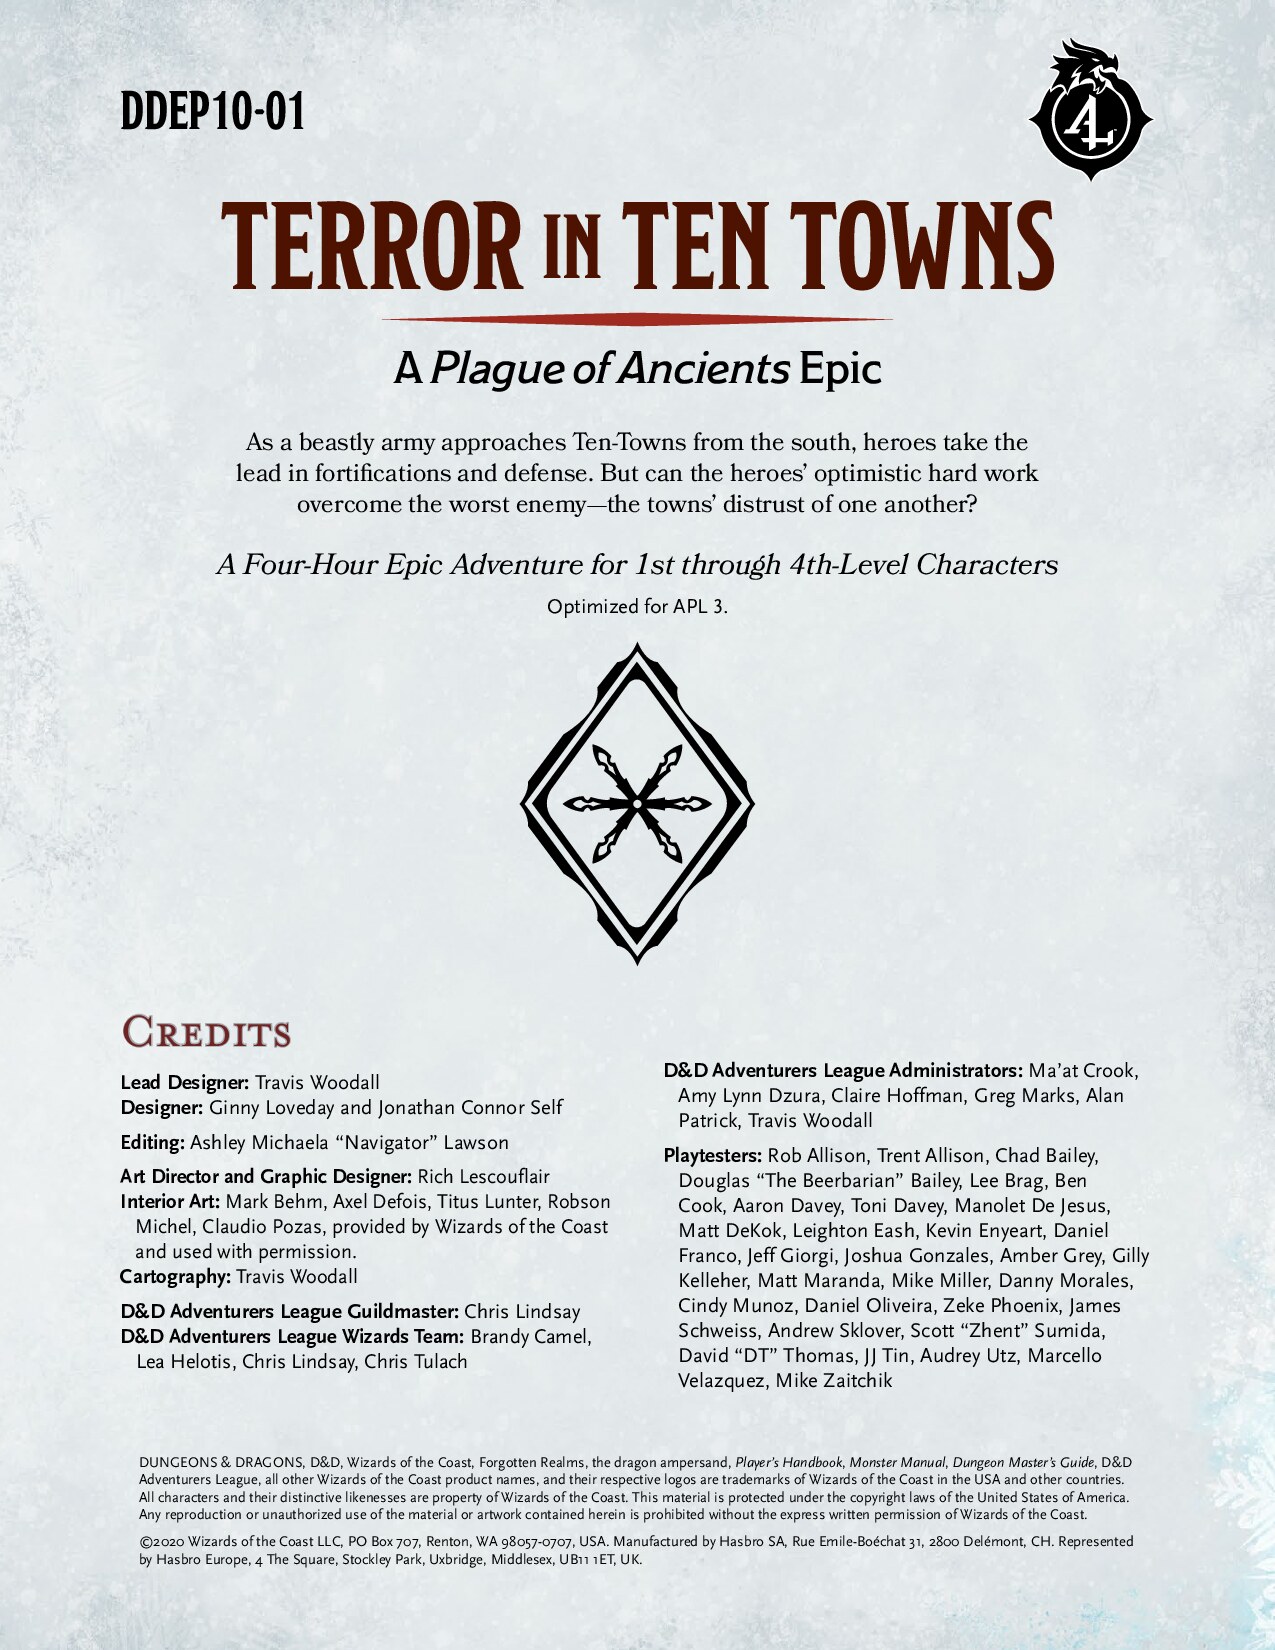 DDEP10-01 - Terror In Ten Towns